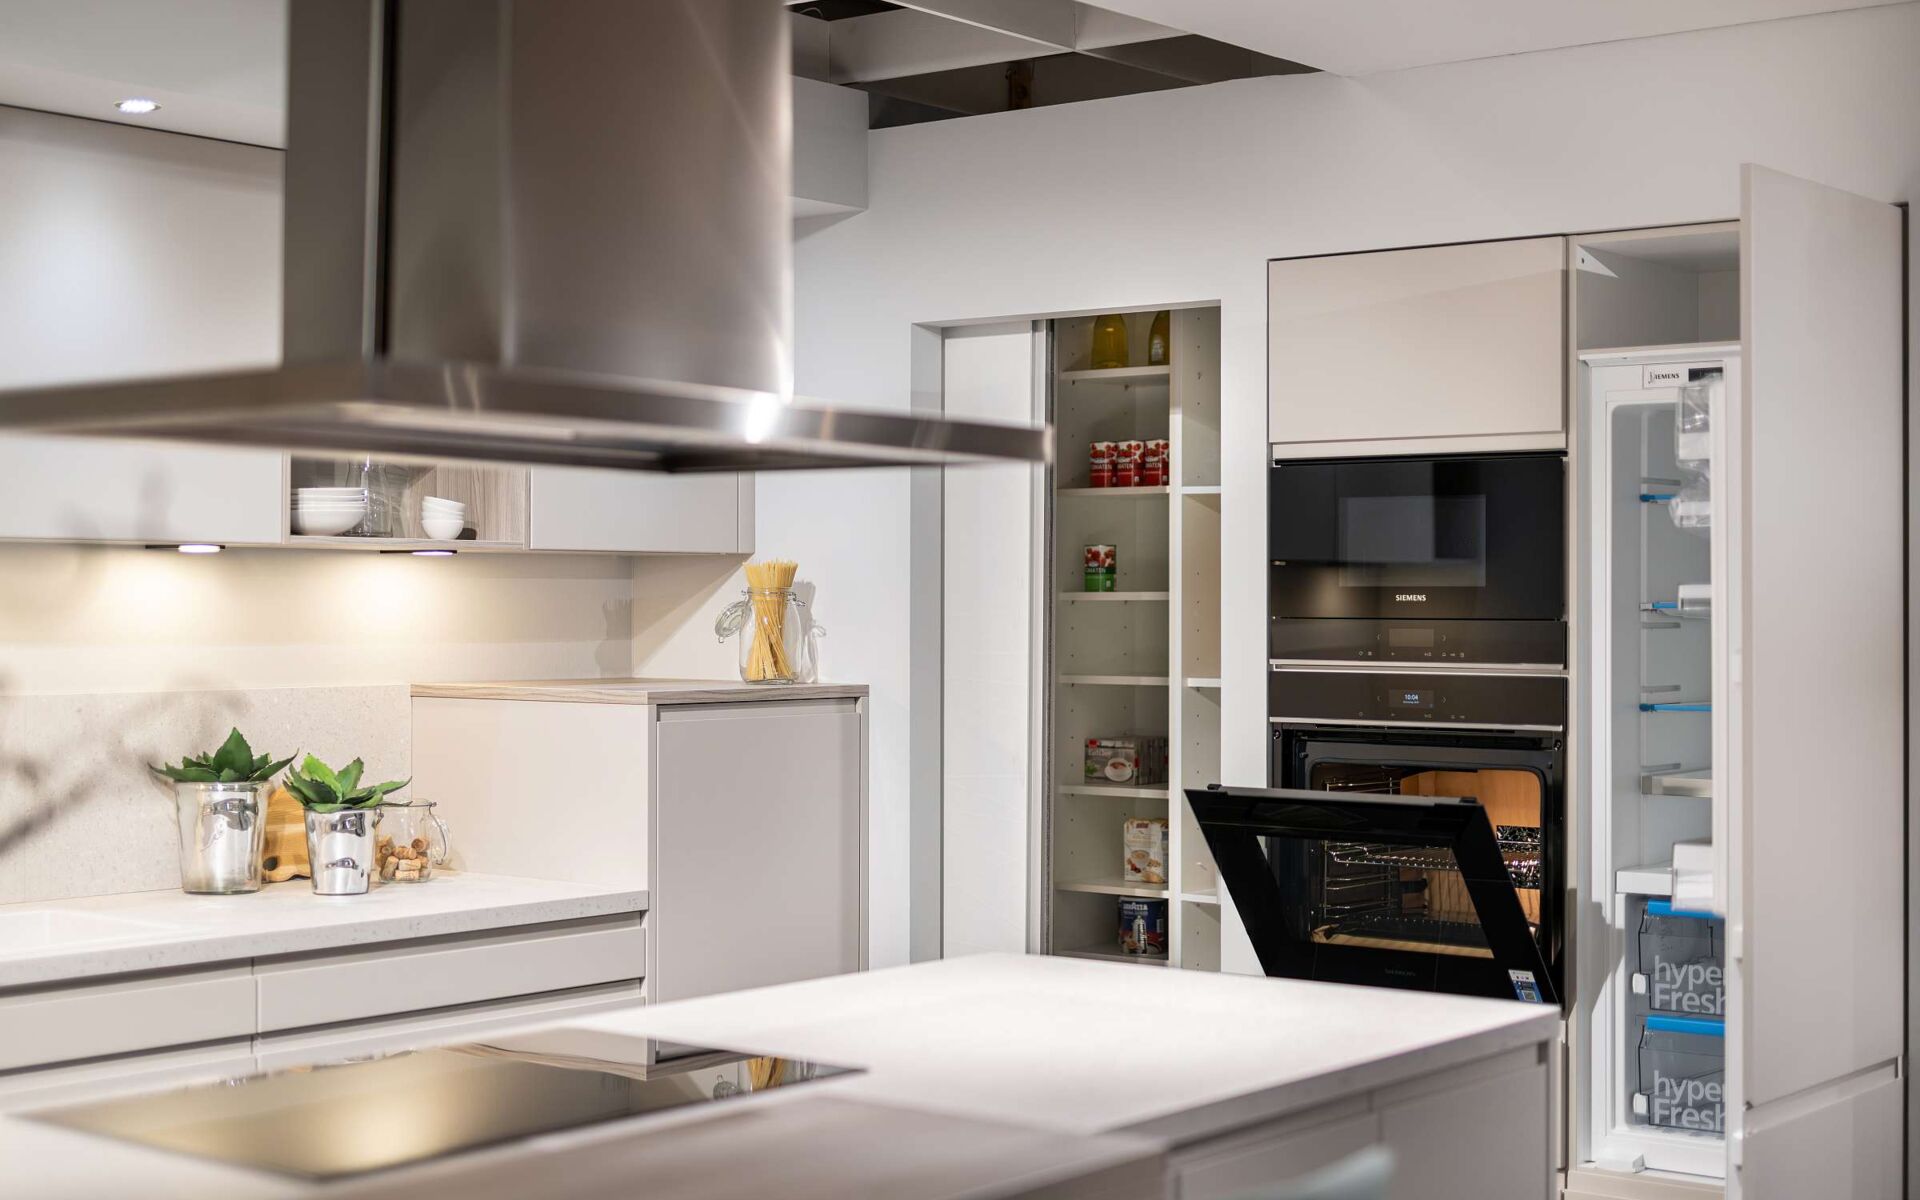 Küche Alea - Ausschnitt Durchgang Speis, Hochschrank mit Backöfen und Kühlschrank